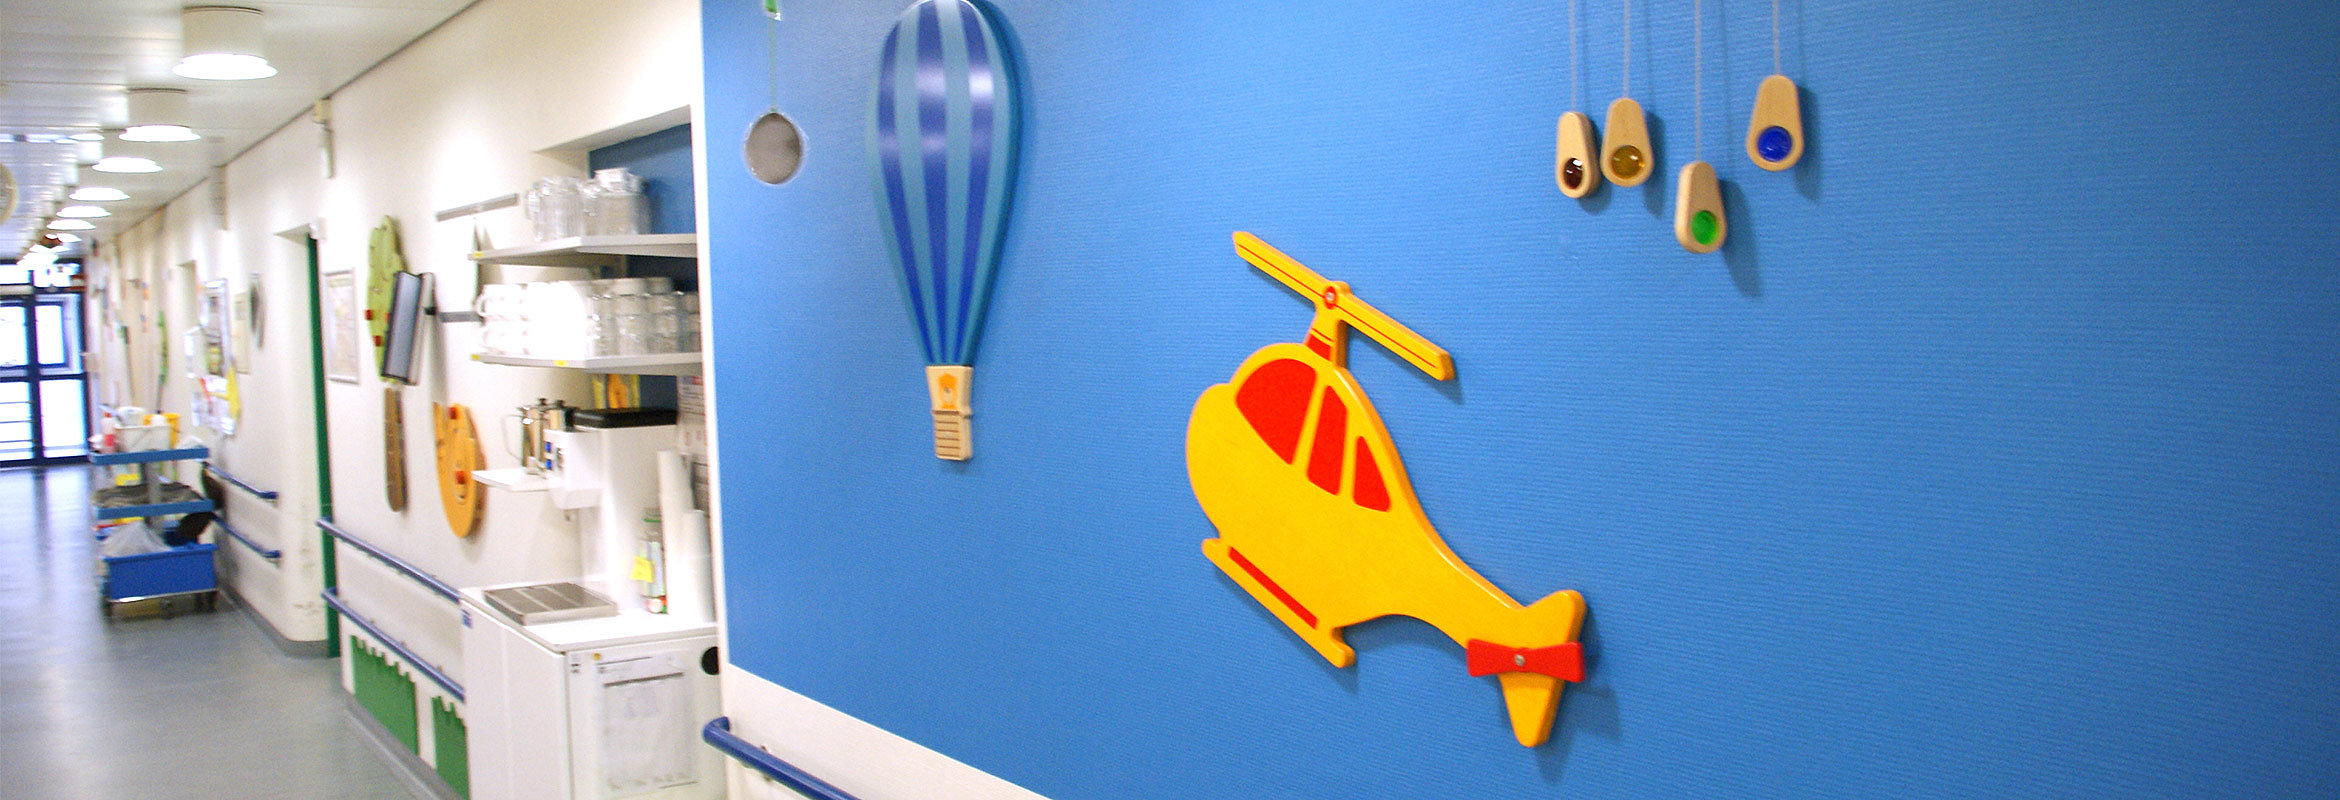 Der Flur der Kinderklinik ist mit Hubschraubern und Heißluftballons dekoriert